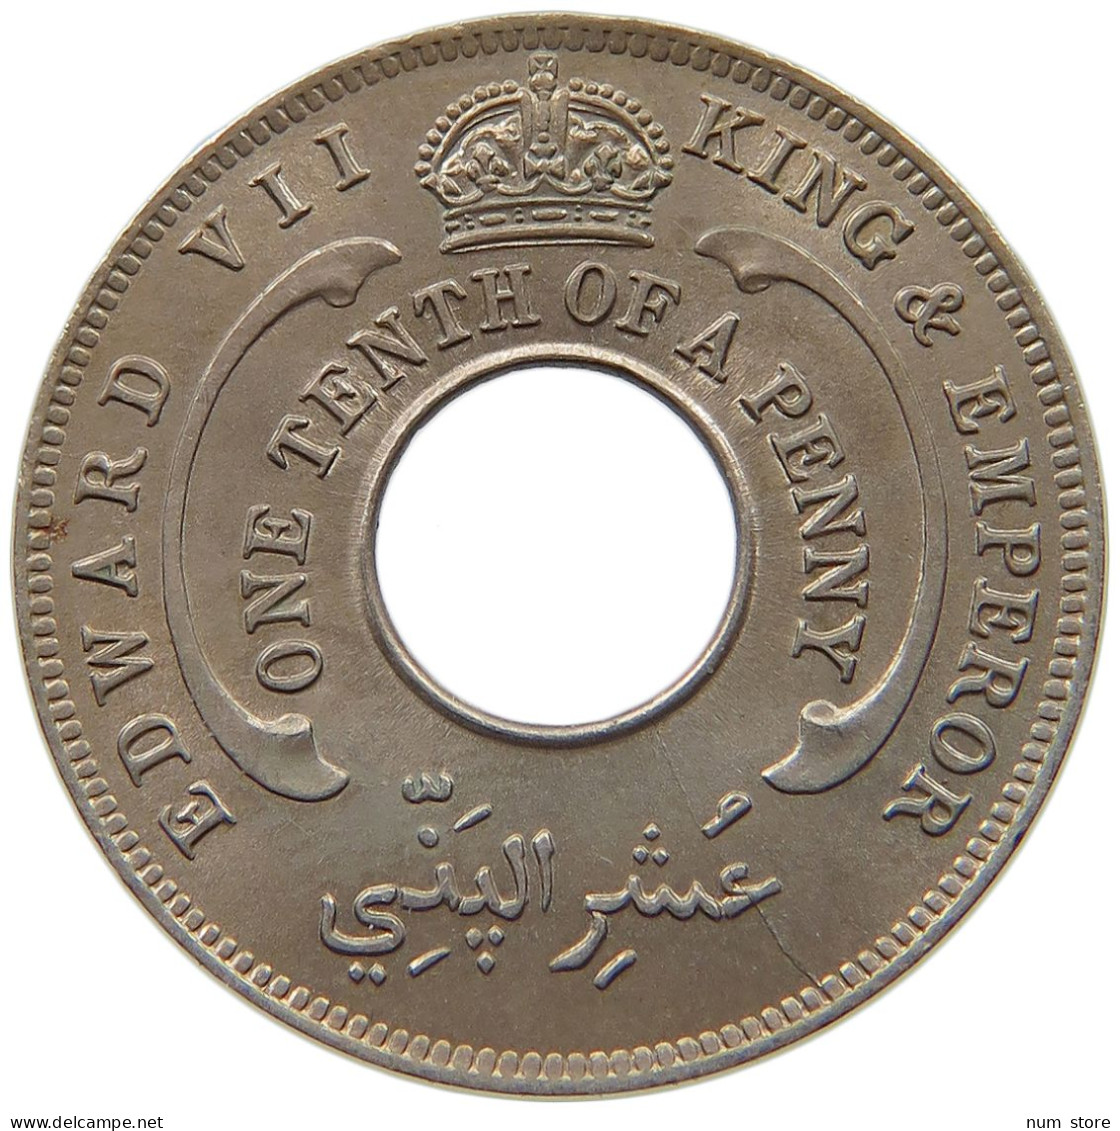 WEST AFRICA 1/10 PENNY 1908 Edward VII., 1901 - 1910 #t113 0175 - Sammlungen